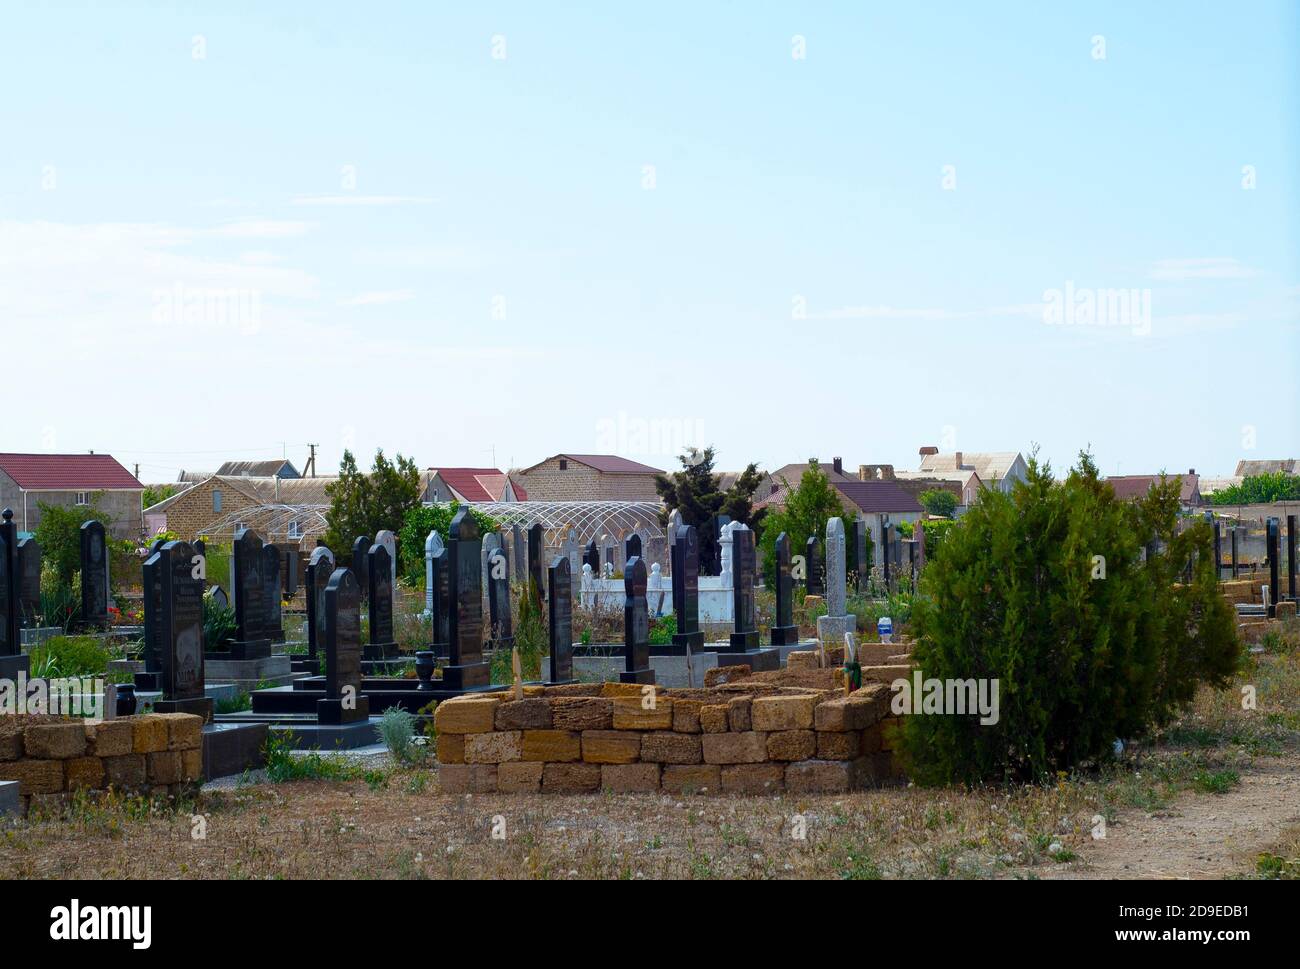 Cimitero sullo sfondo di case rurali. Cielo blu. Tempo soleggiato. Il rapporto tra i vivi e i morti. Terra comune. Foto Stock